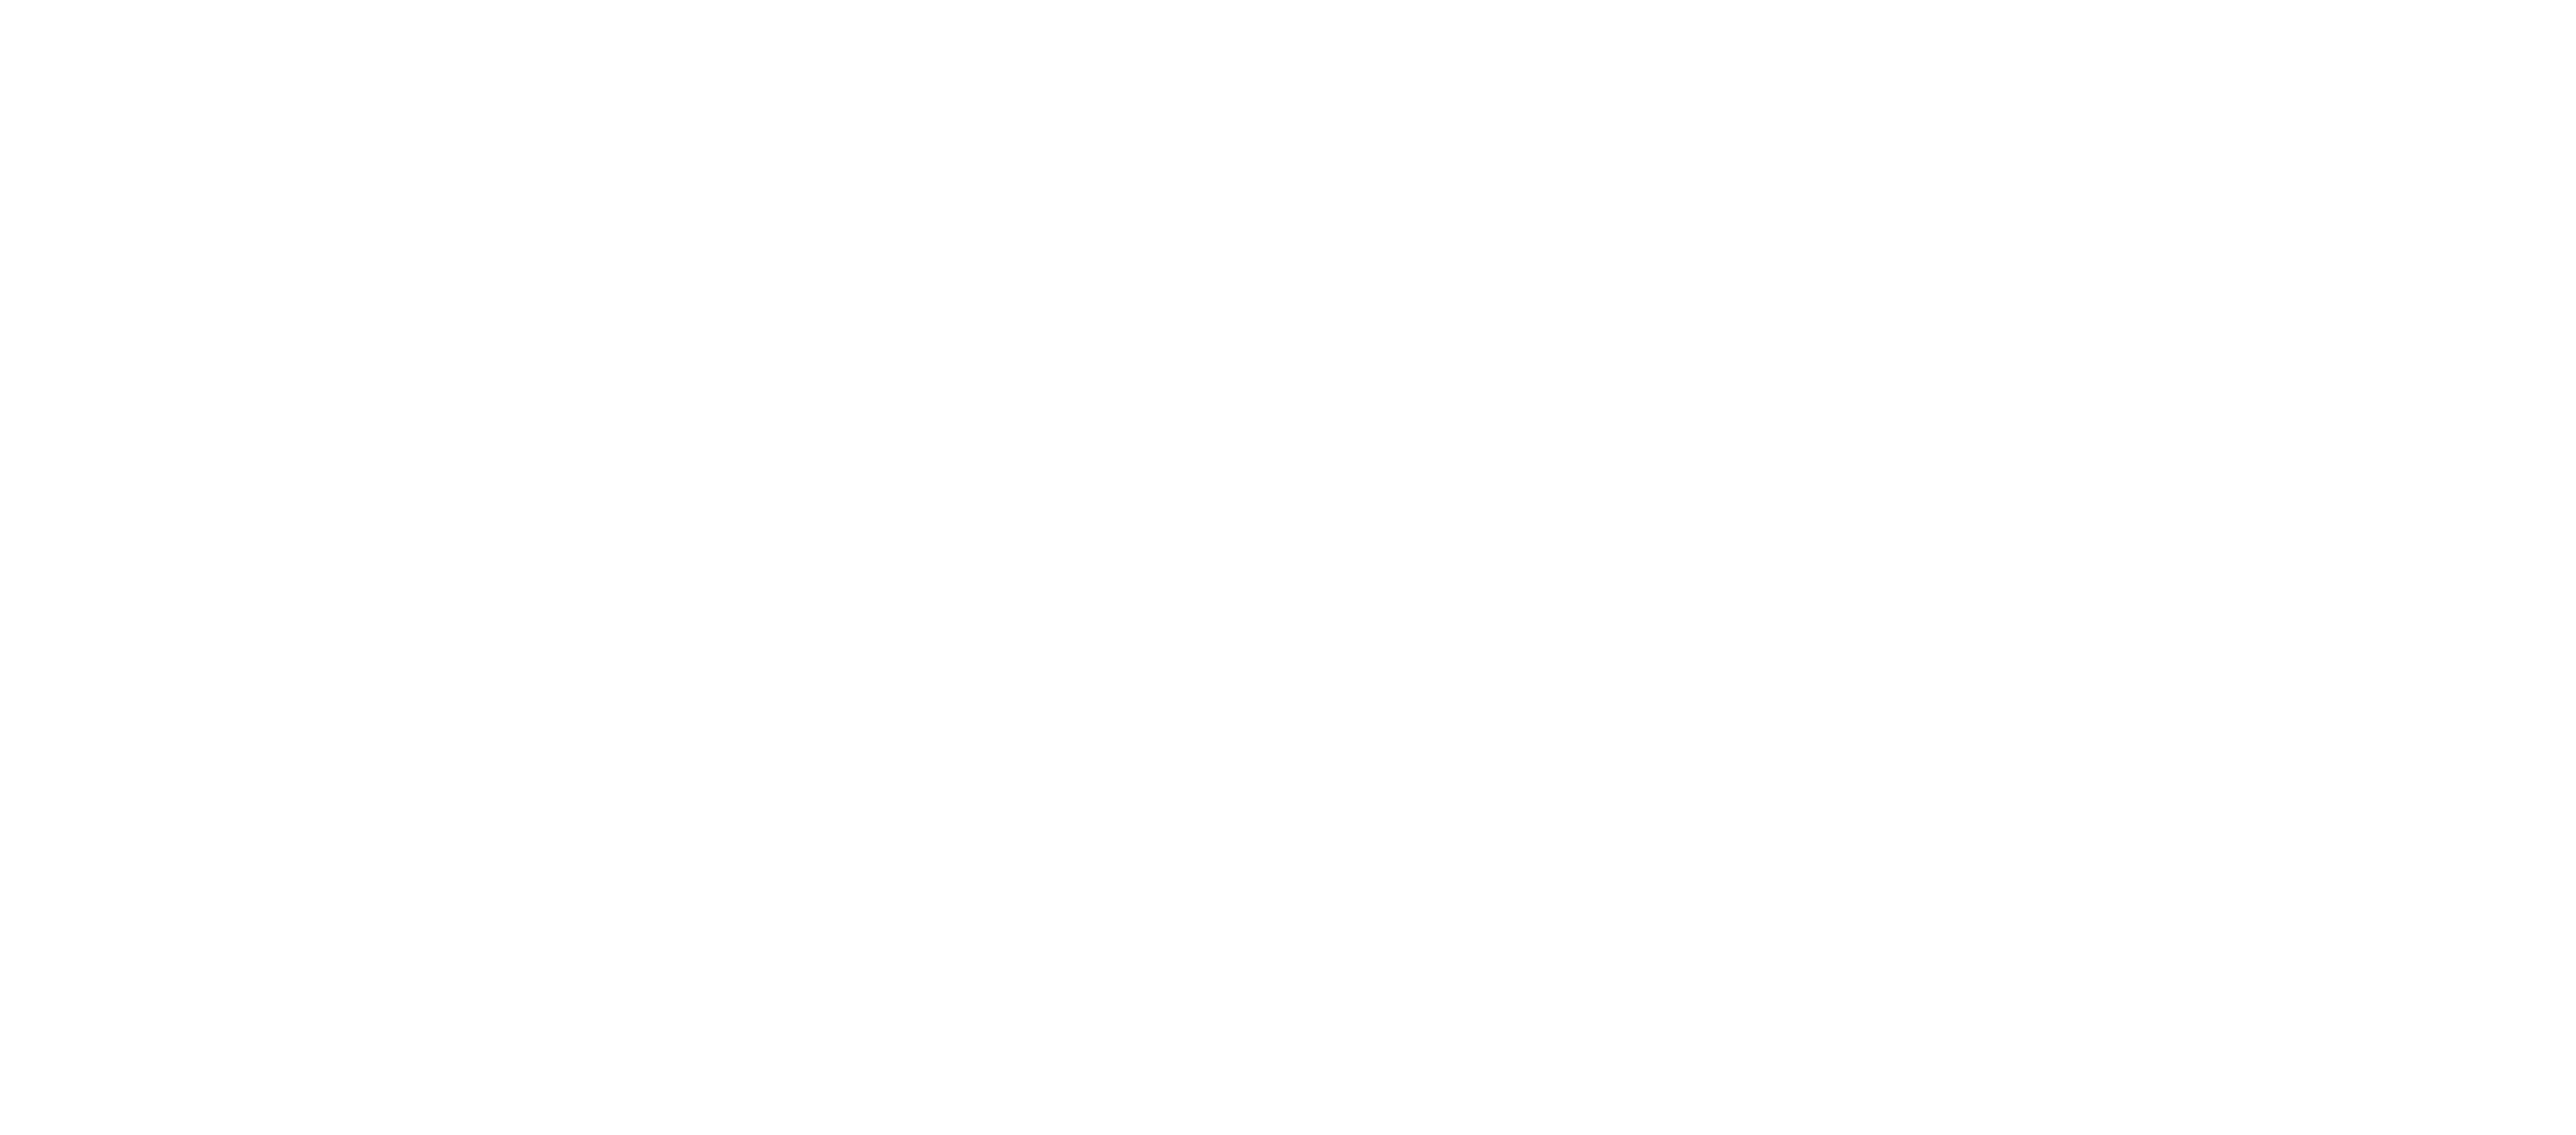 Wilks Funeral Homes Logo